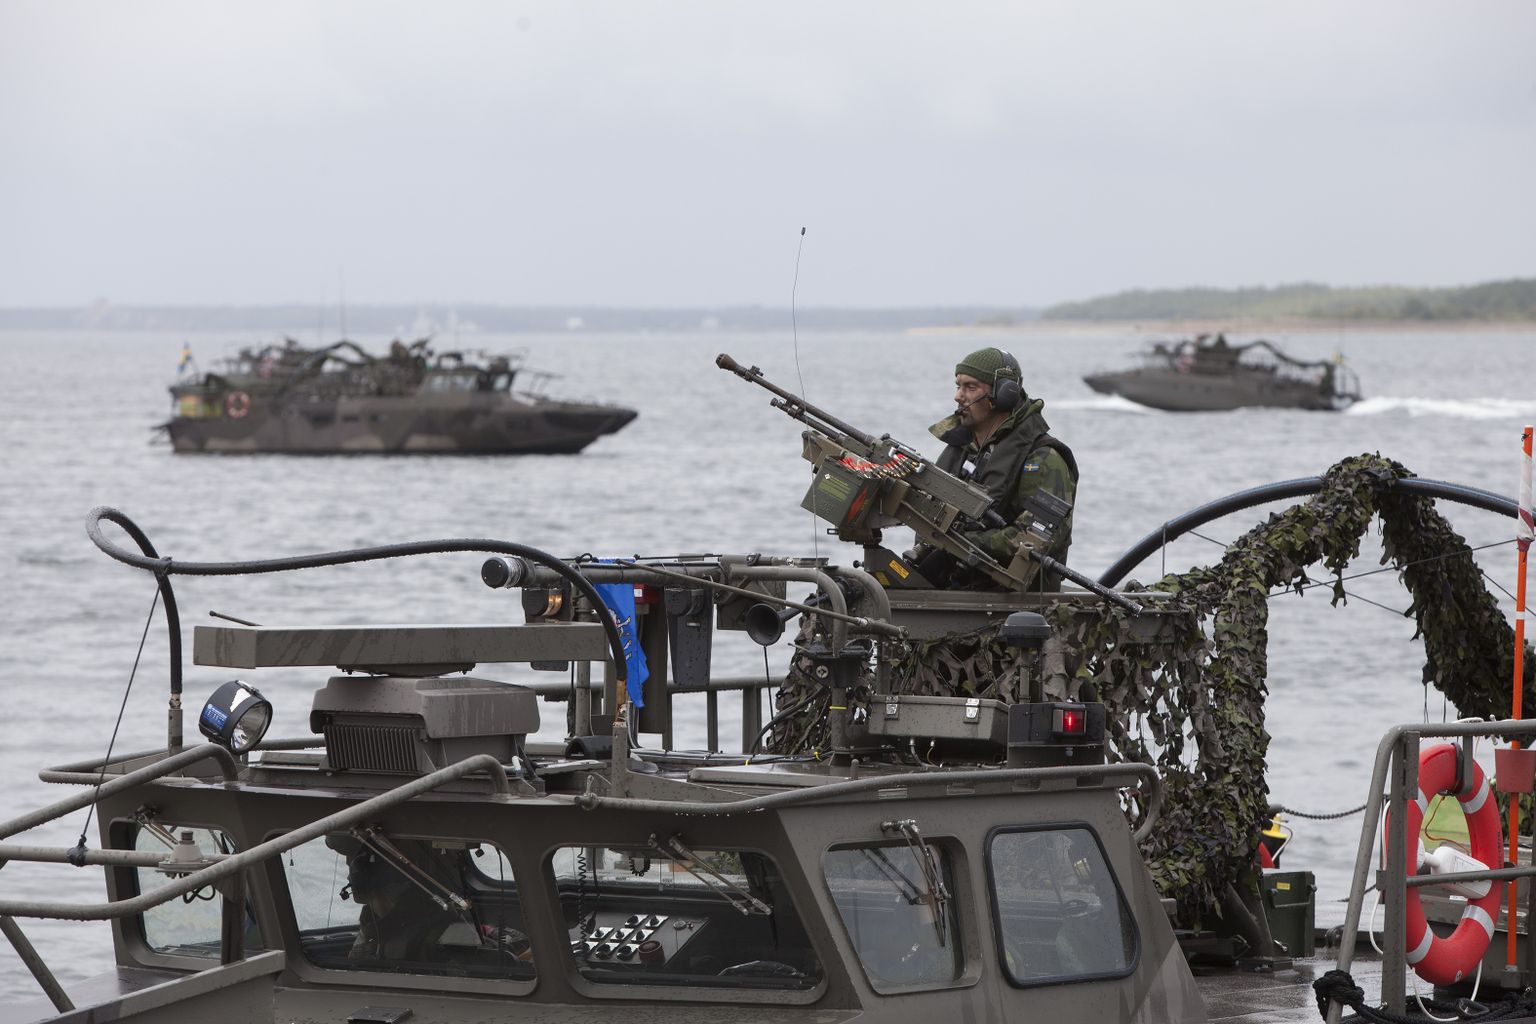 Möödunud aasta septembris korraldatud rahvusvaheline sõjaväeõppus Aurora 17 oli suurim, mida Rootsi viimase kahe aastakümne vältel korraldanud on.